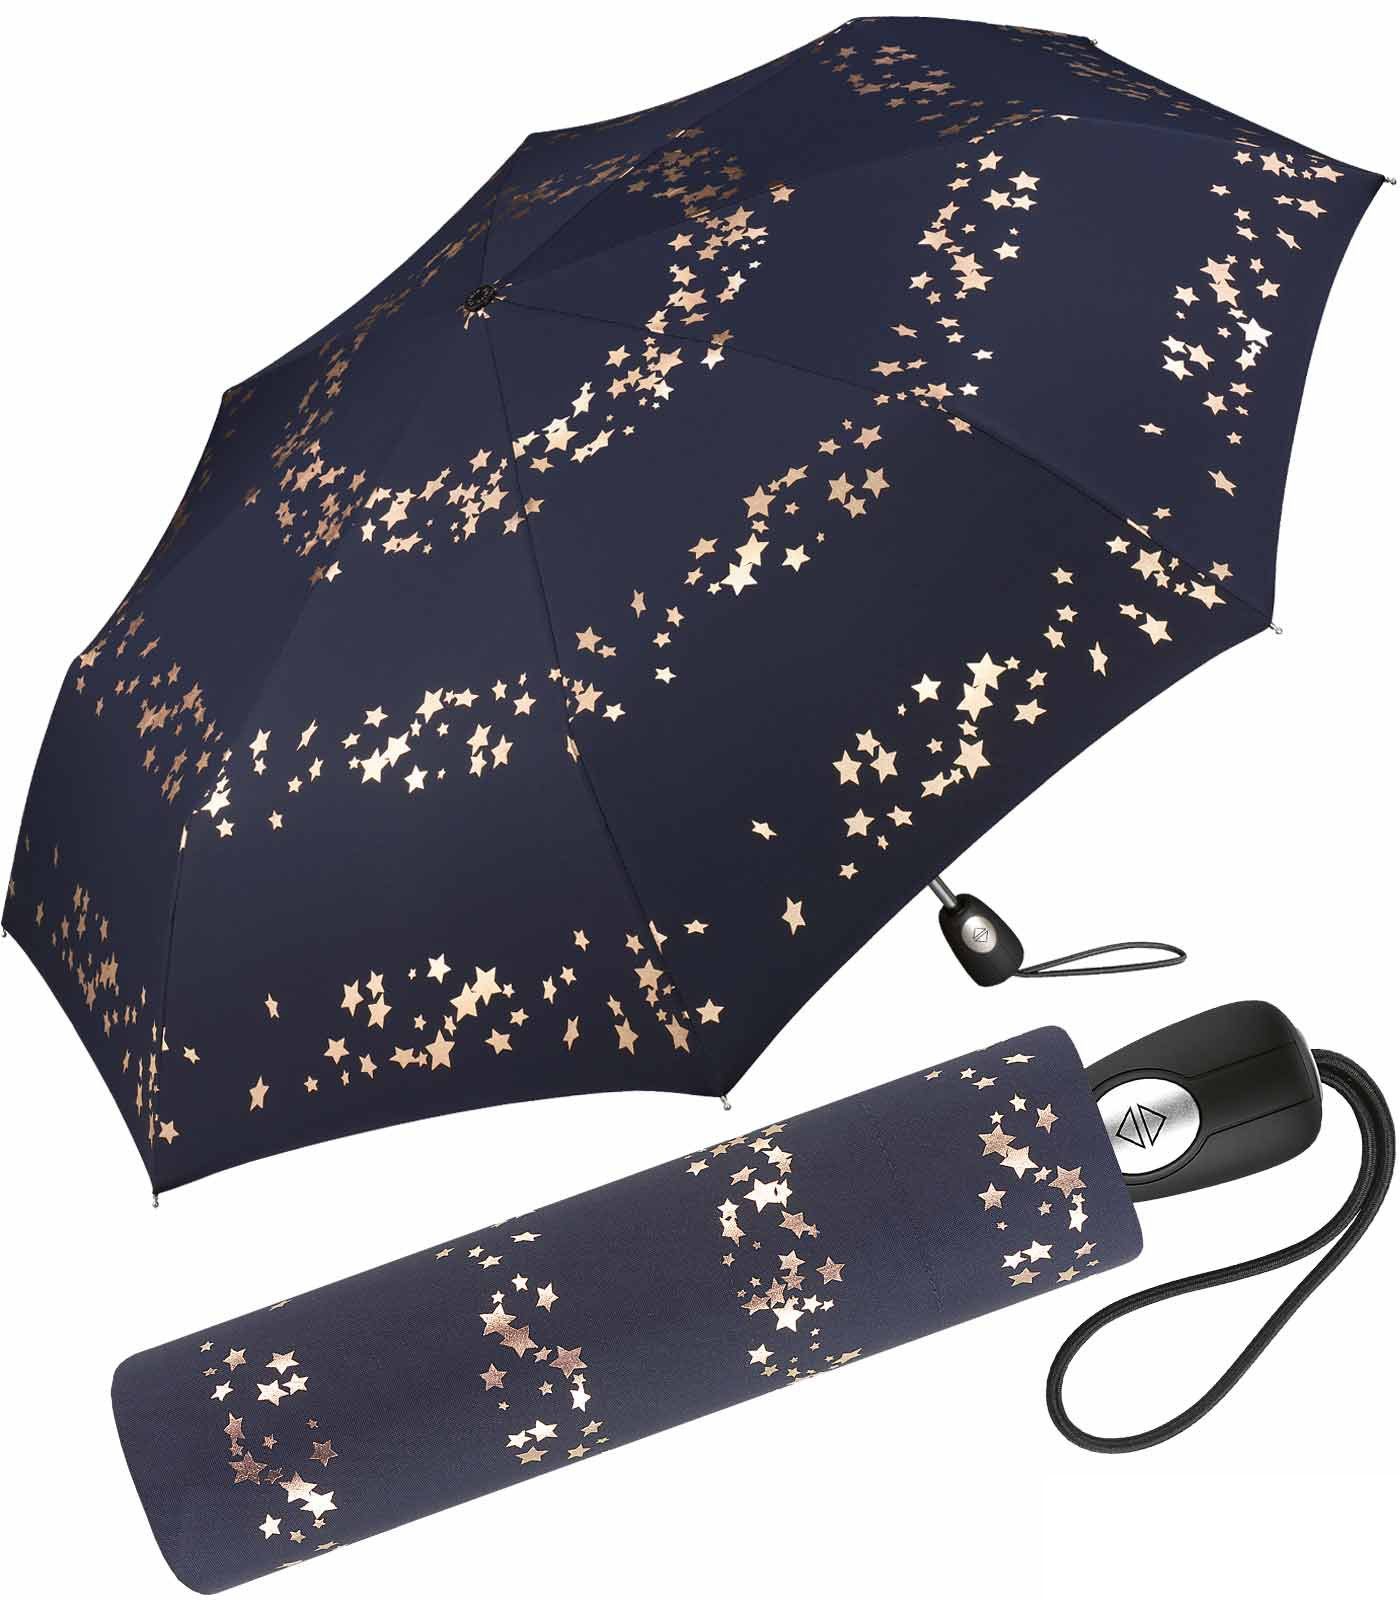 Pierre Cardin Taschenregenschirm schöner blau-rotgold in traumhafte Damen-Regenschirm Auf-Zu-Automatik, Design verspieltem Sterne mit